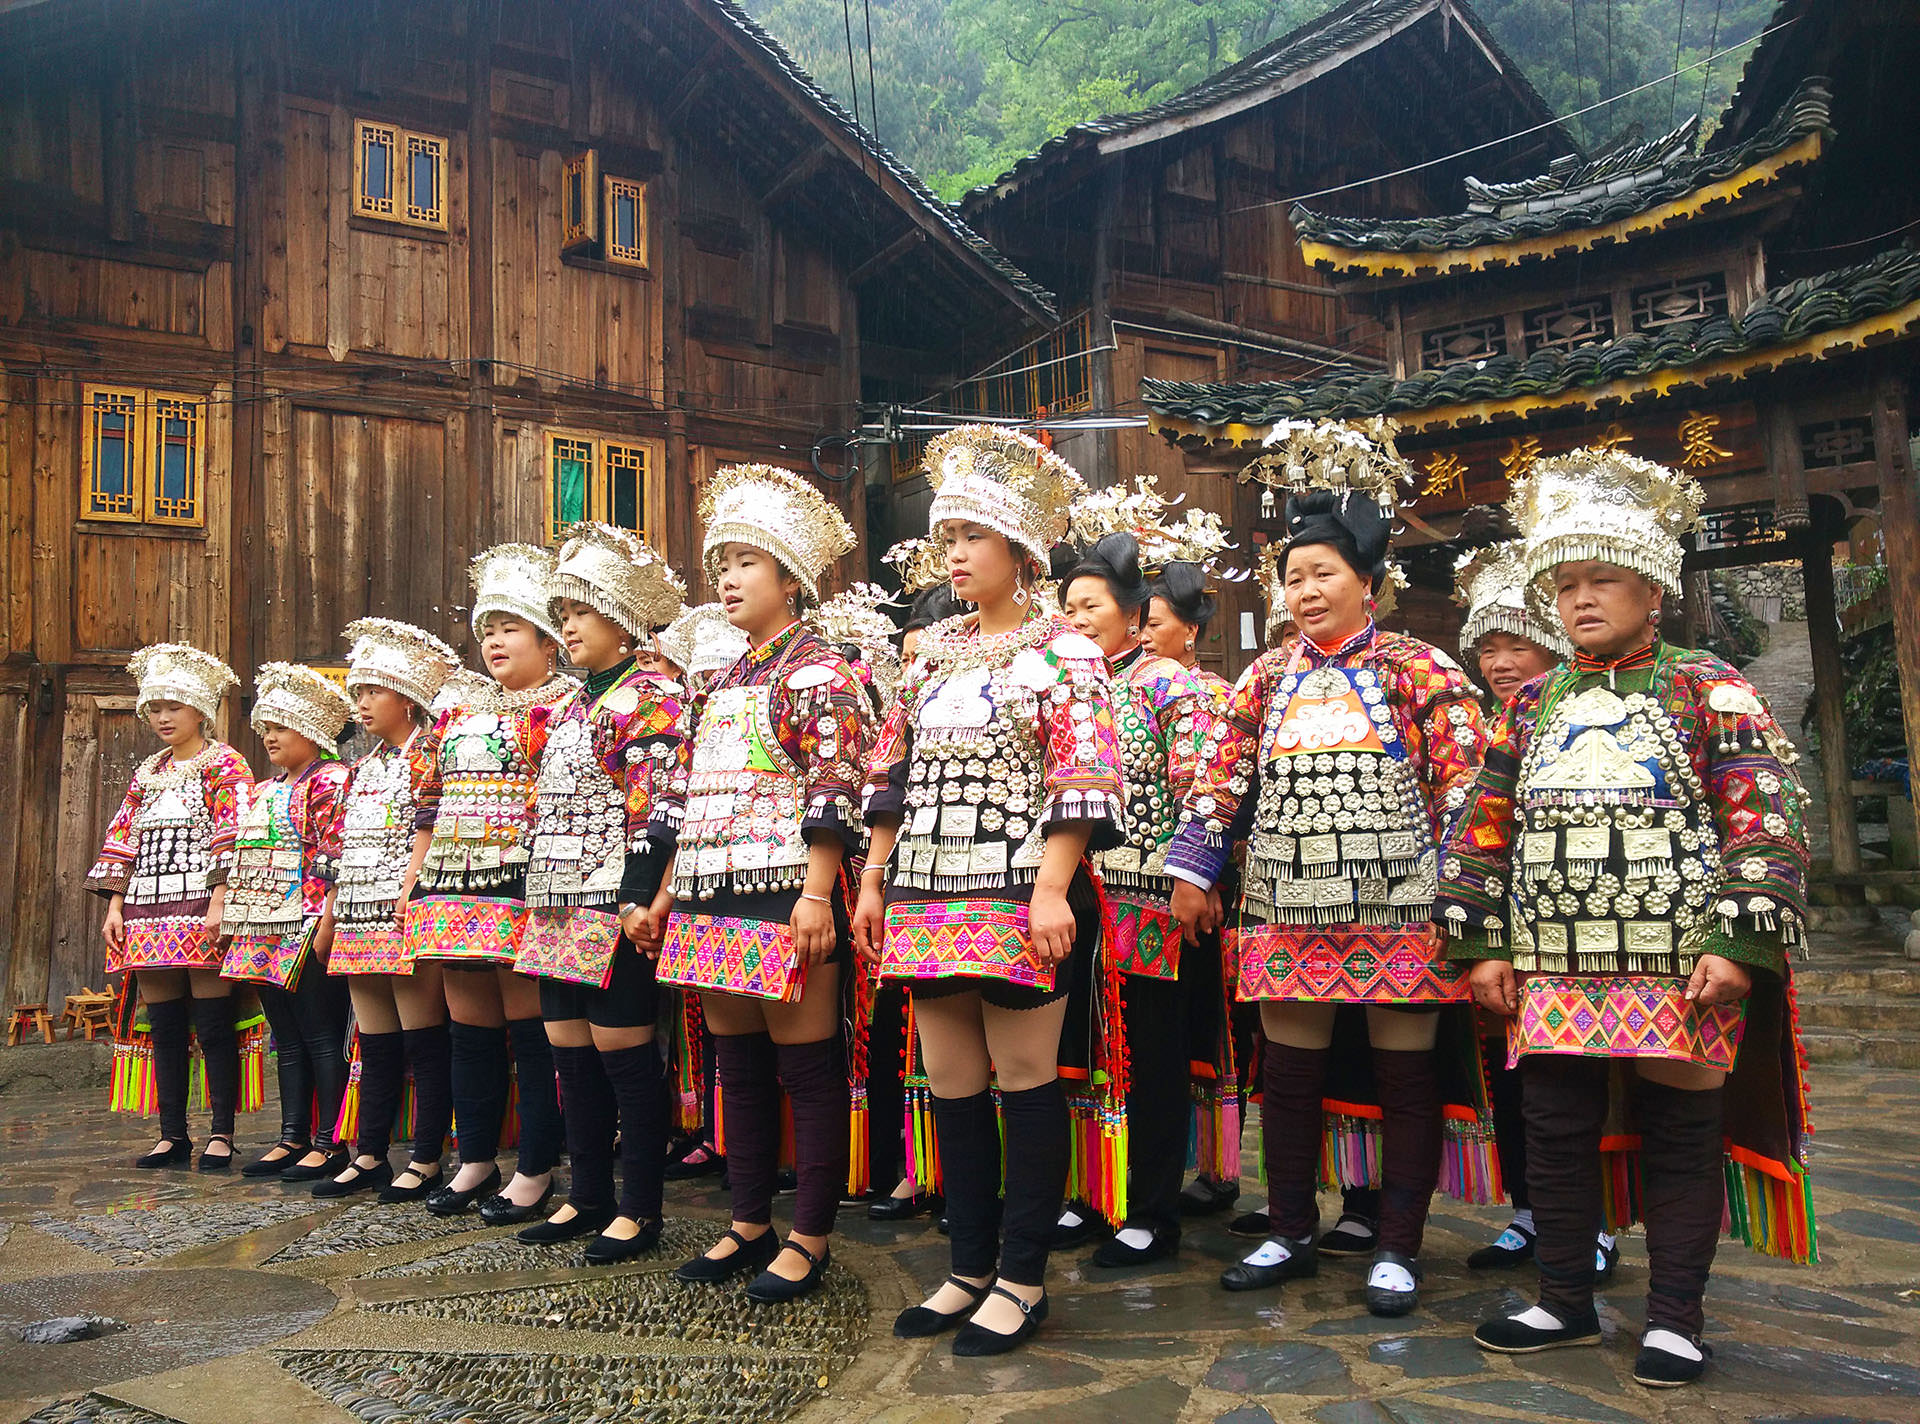 בנות המיאו בריקוד מסורתי בדה-טאנג (צילום: יובל לוי)